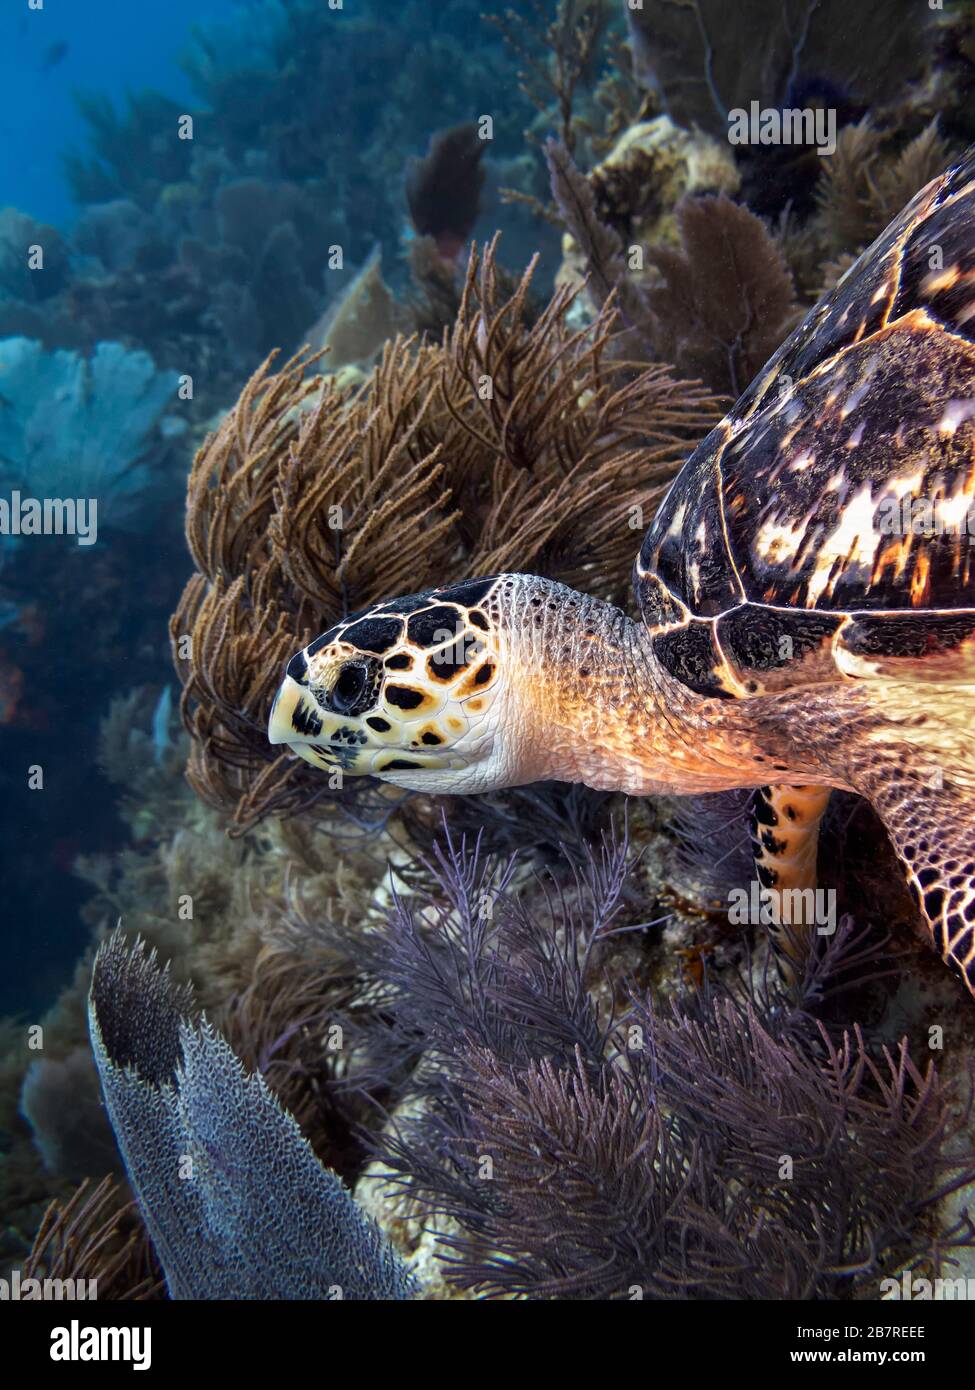 Tartaruga di mare di Hawksbill (Eretmochelys imbricata) su una barriera corallina, animale raro nel suo habitat naturale, Florida Keys, Stati Uniti, Oceano Atlantico, colore Foto Stock